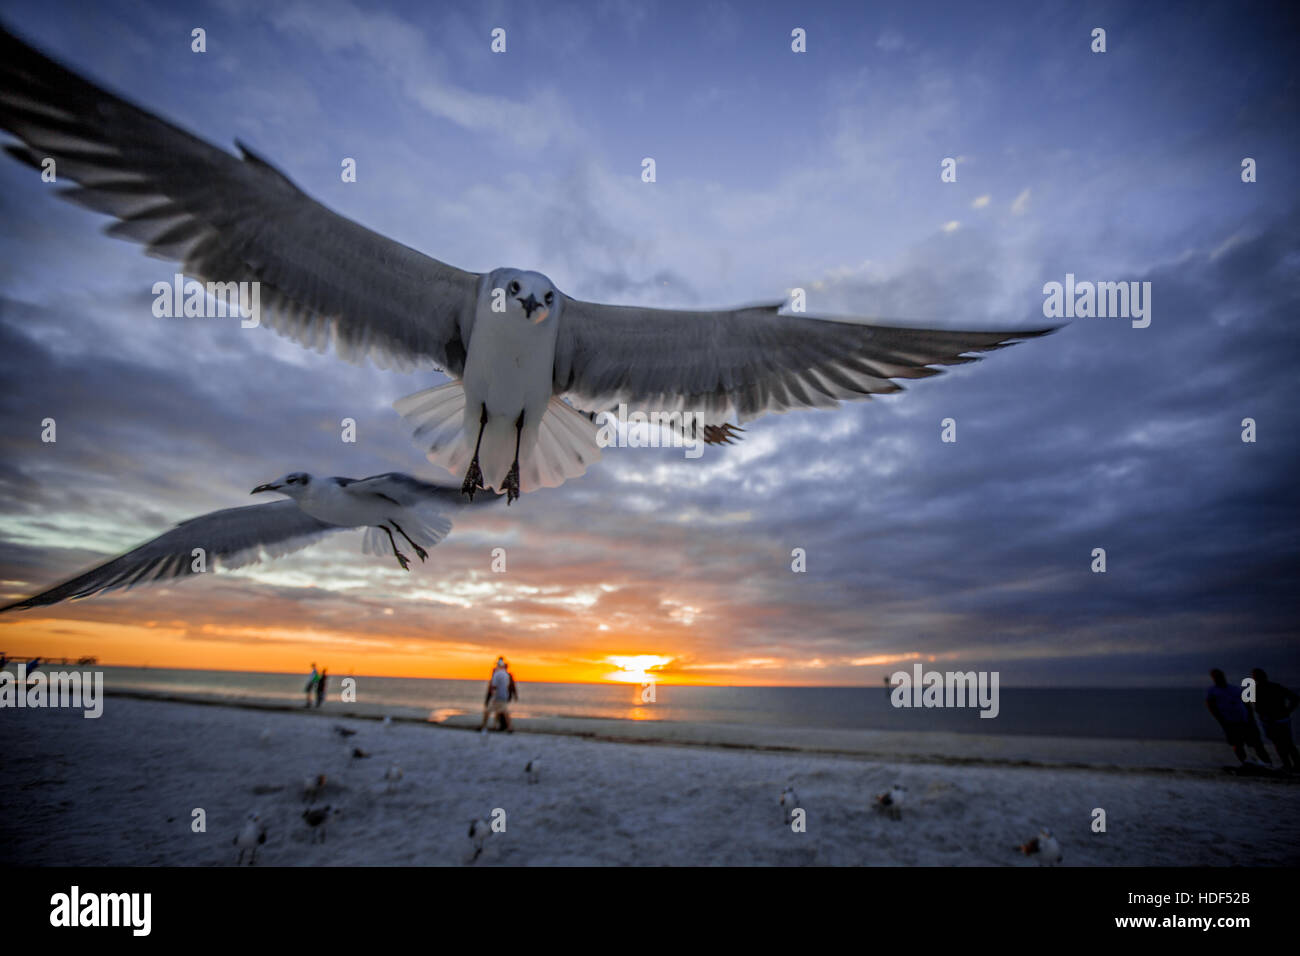 Les oiseaux dans la région de Clearwater Beach, Floride, USA pendant le coucher du soleil. La photo artistique convient pour les magazines de voyage, livres de photographie Banque D'Images